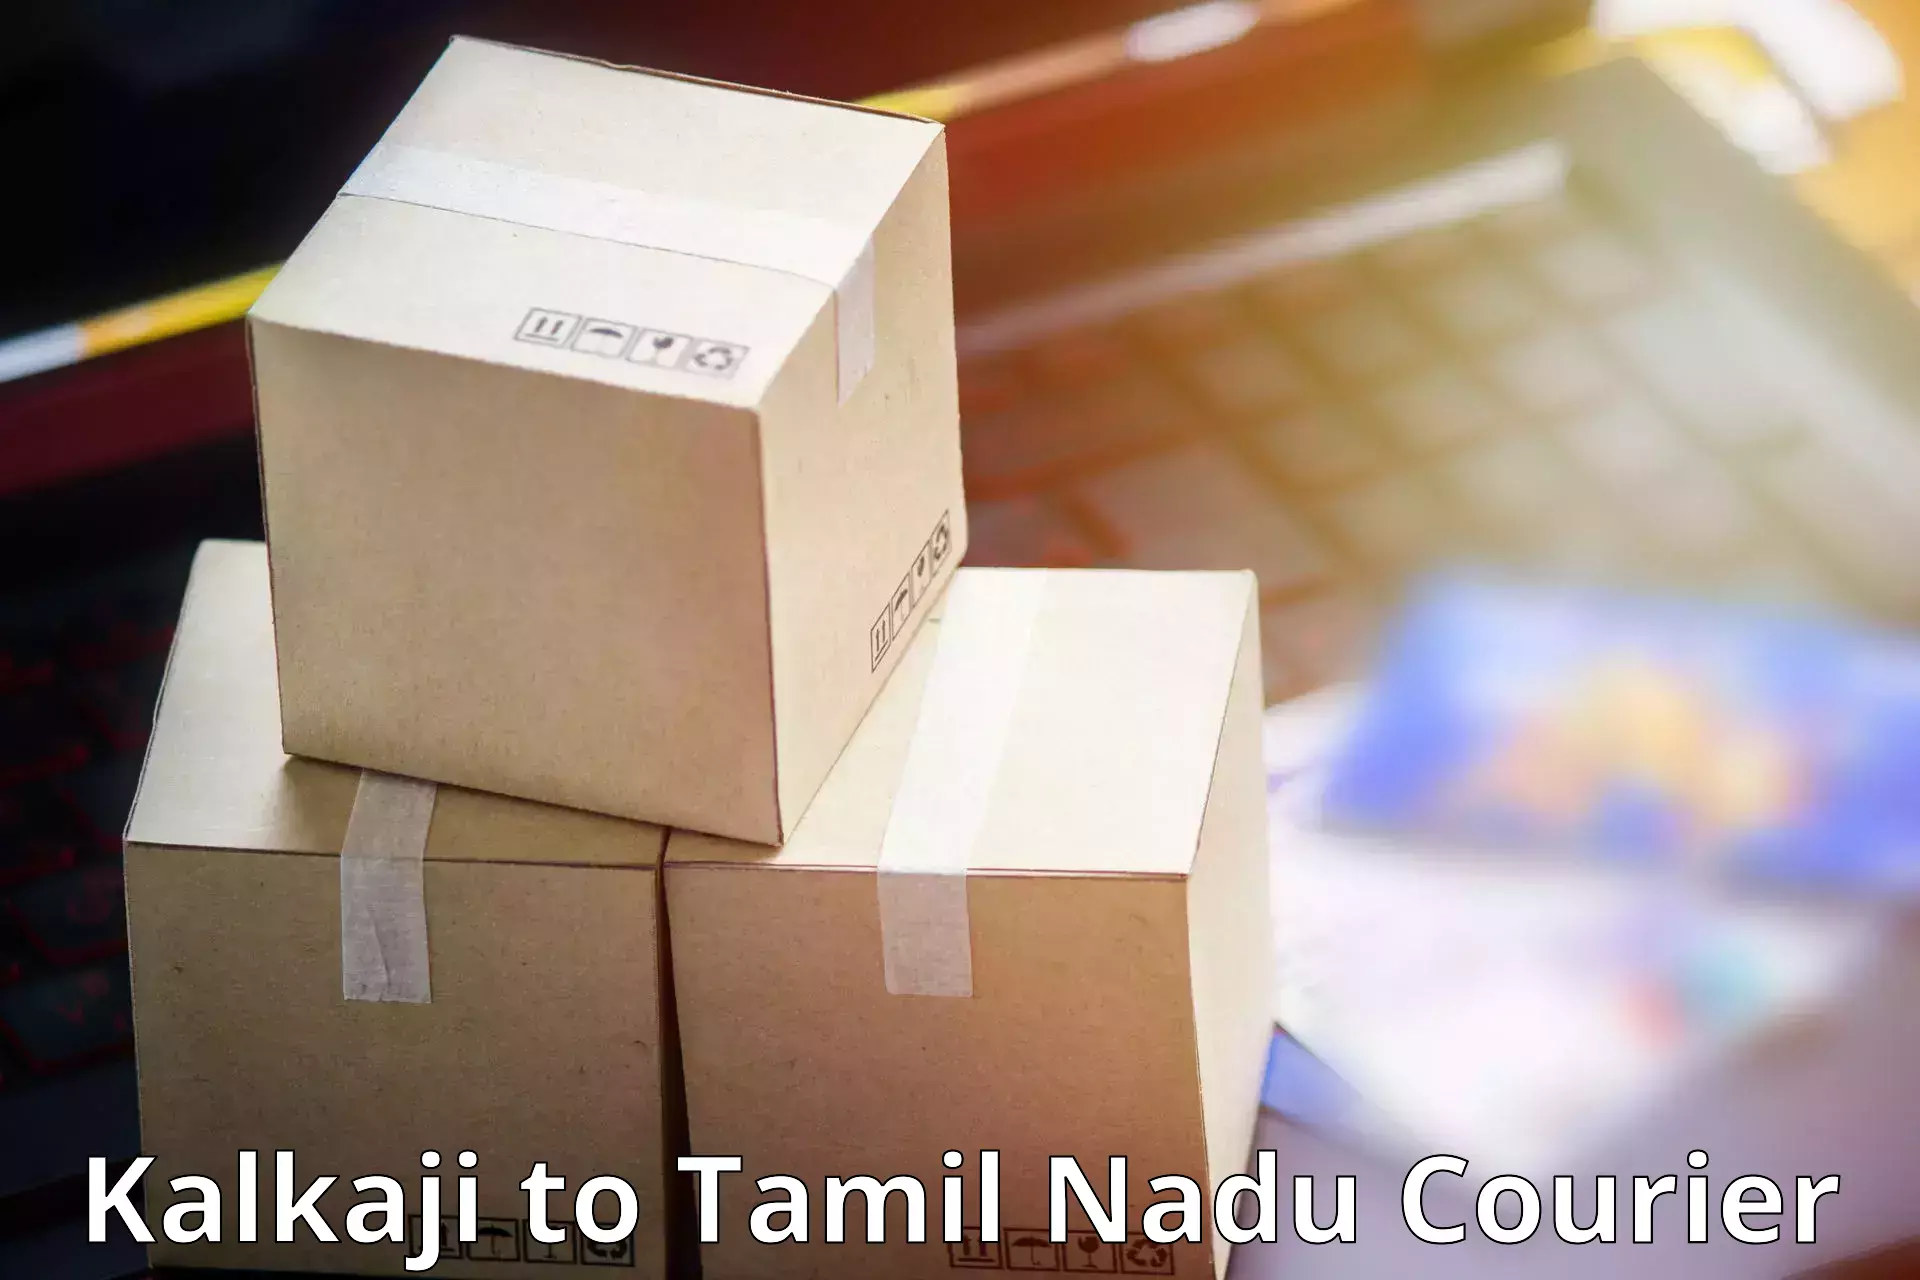 Professional parcel services Kalkaji to Tamil Nadu